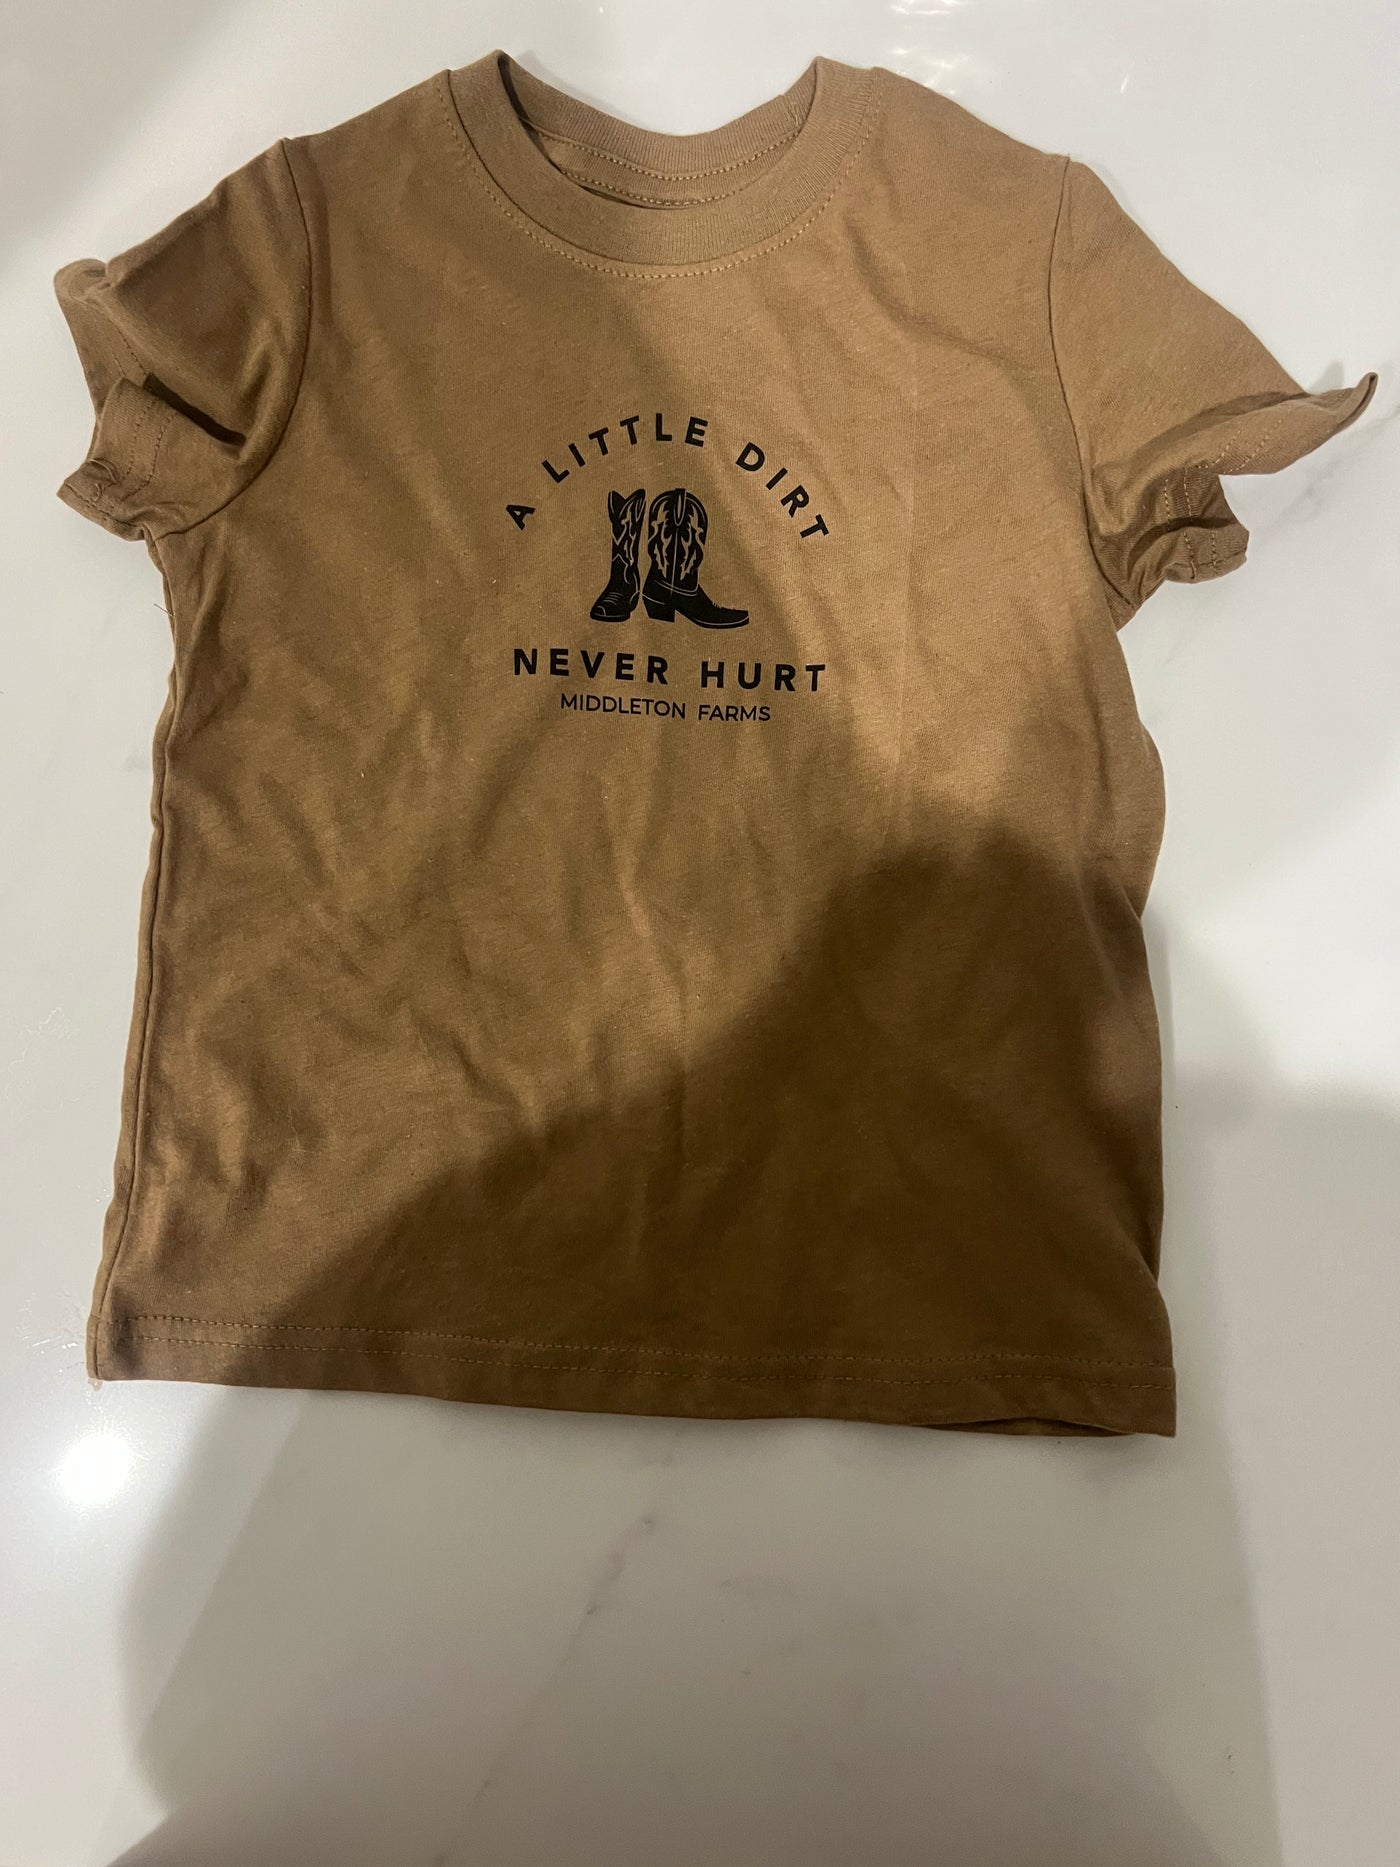 Kids Clothing - (Brown Shirt + Onesie) - A Little Dirt